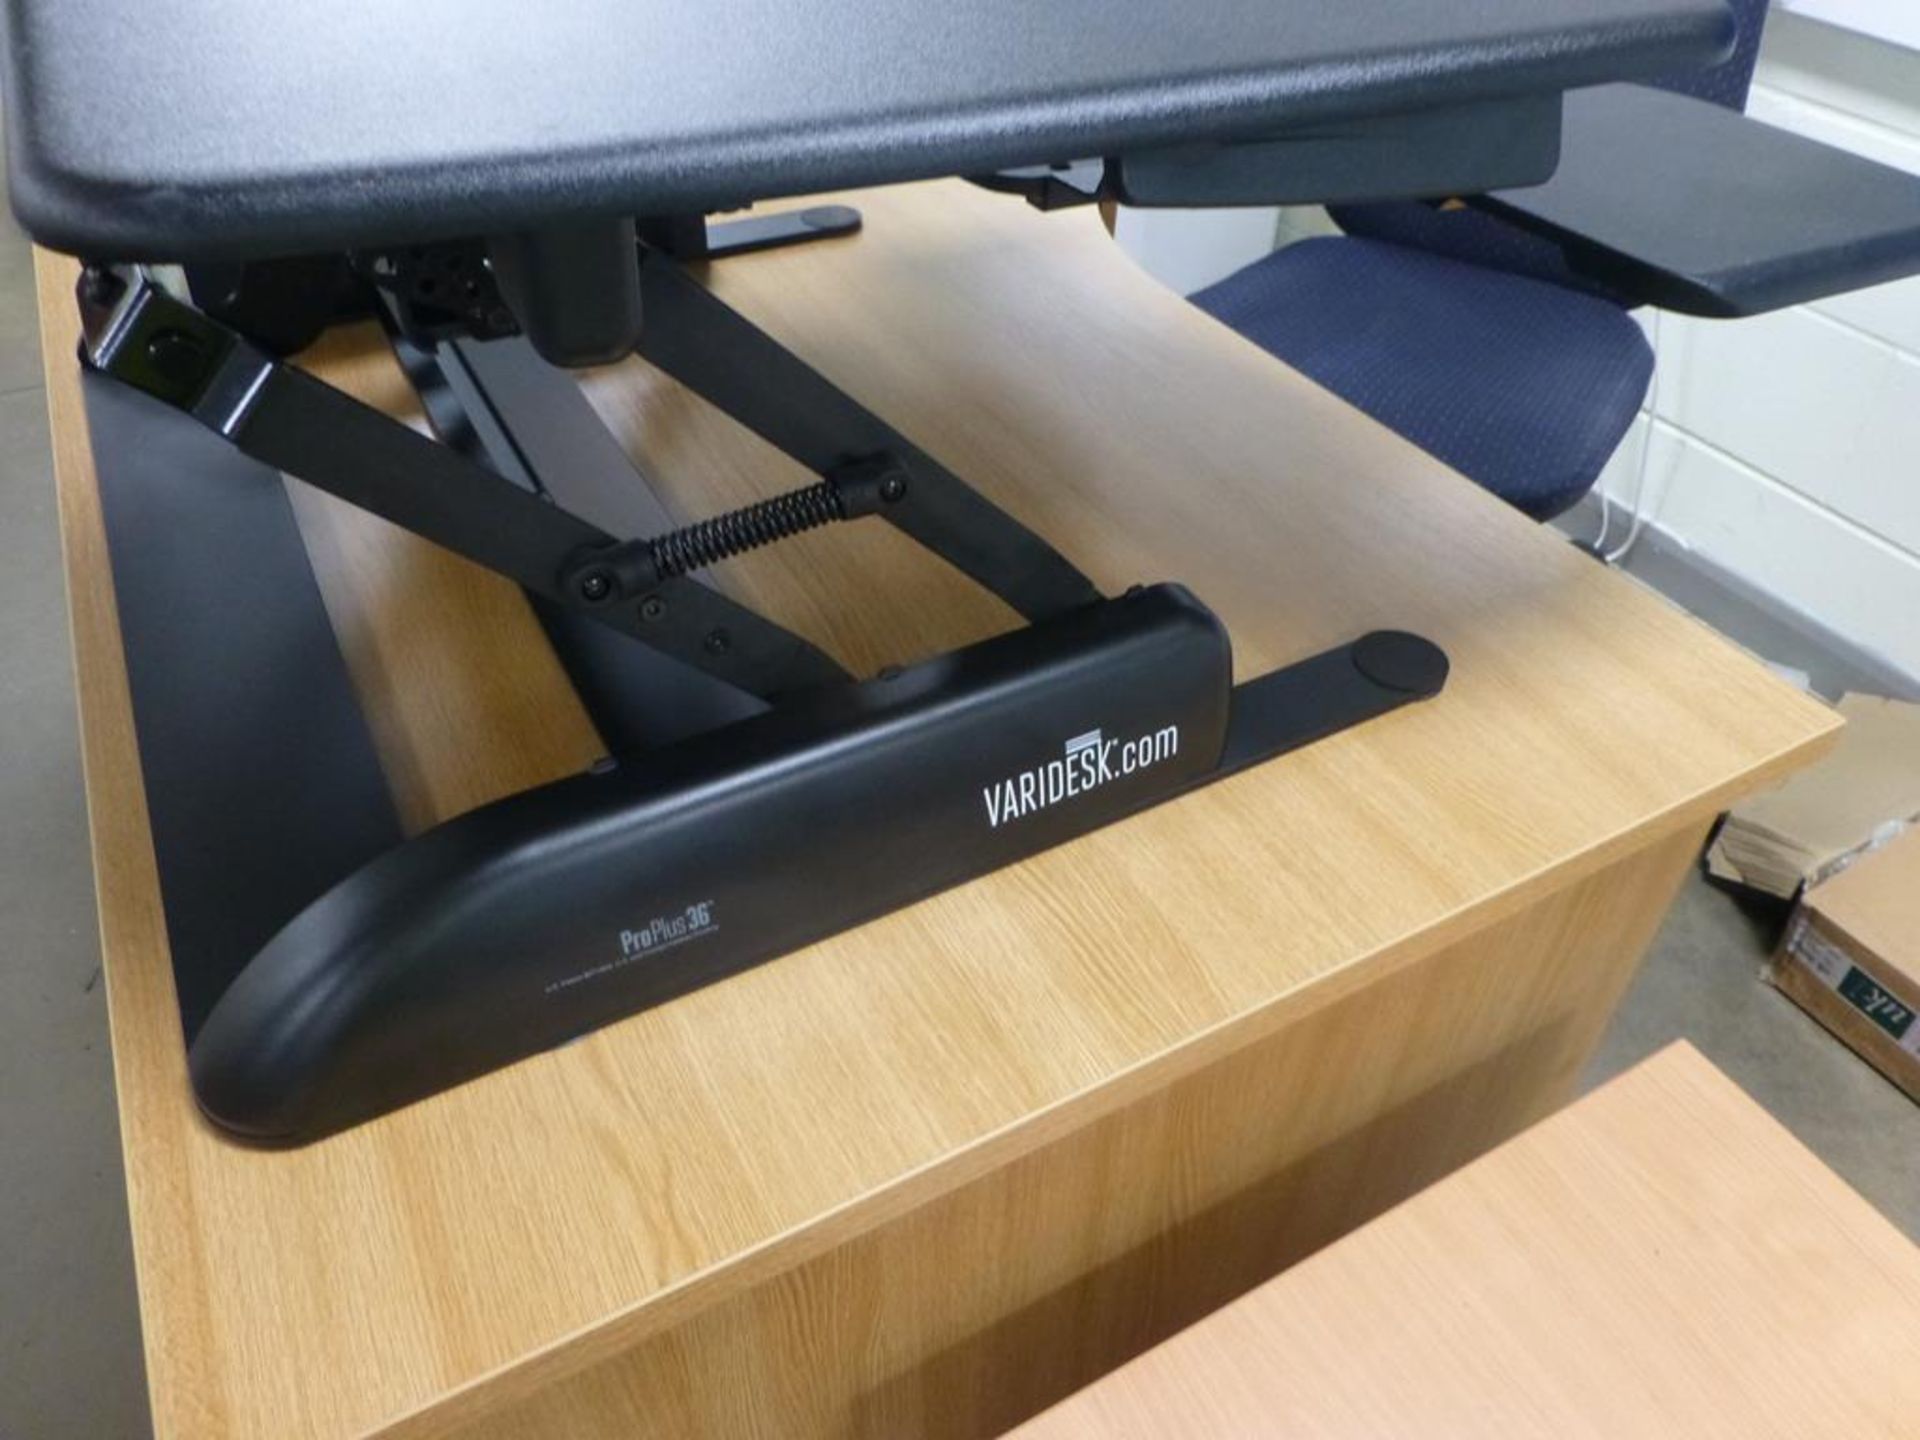 Pro Plus 36 Varidesk standing desk converter - Image 2 of 3